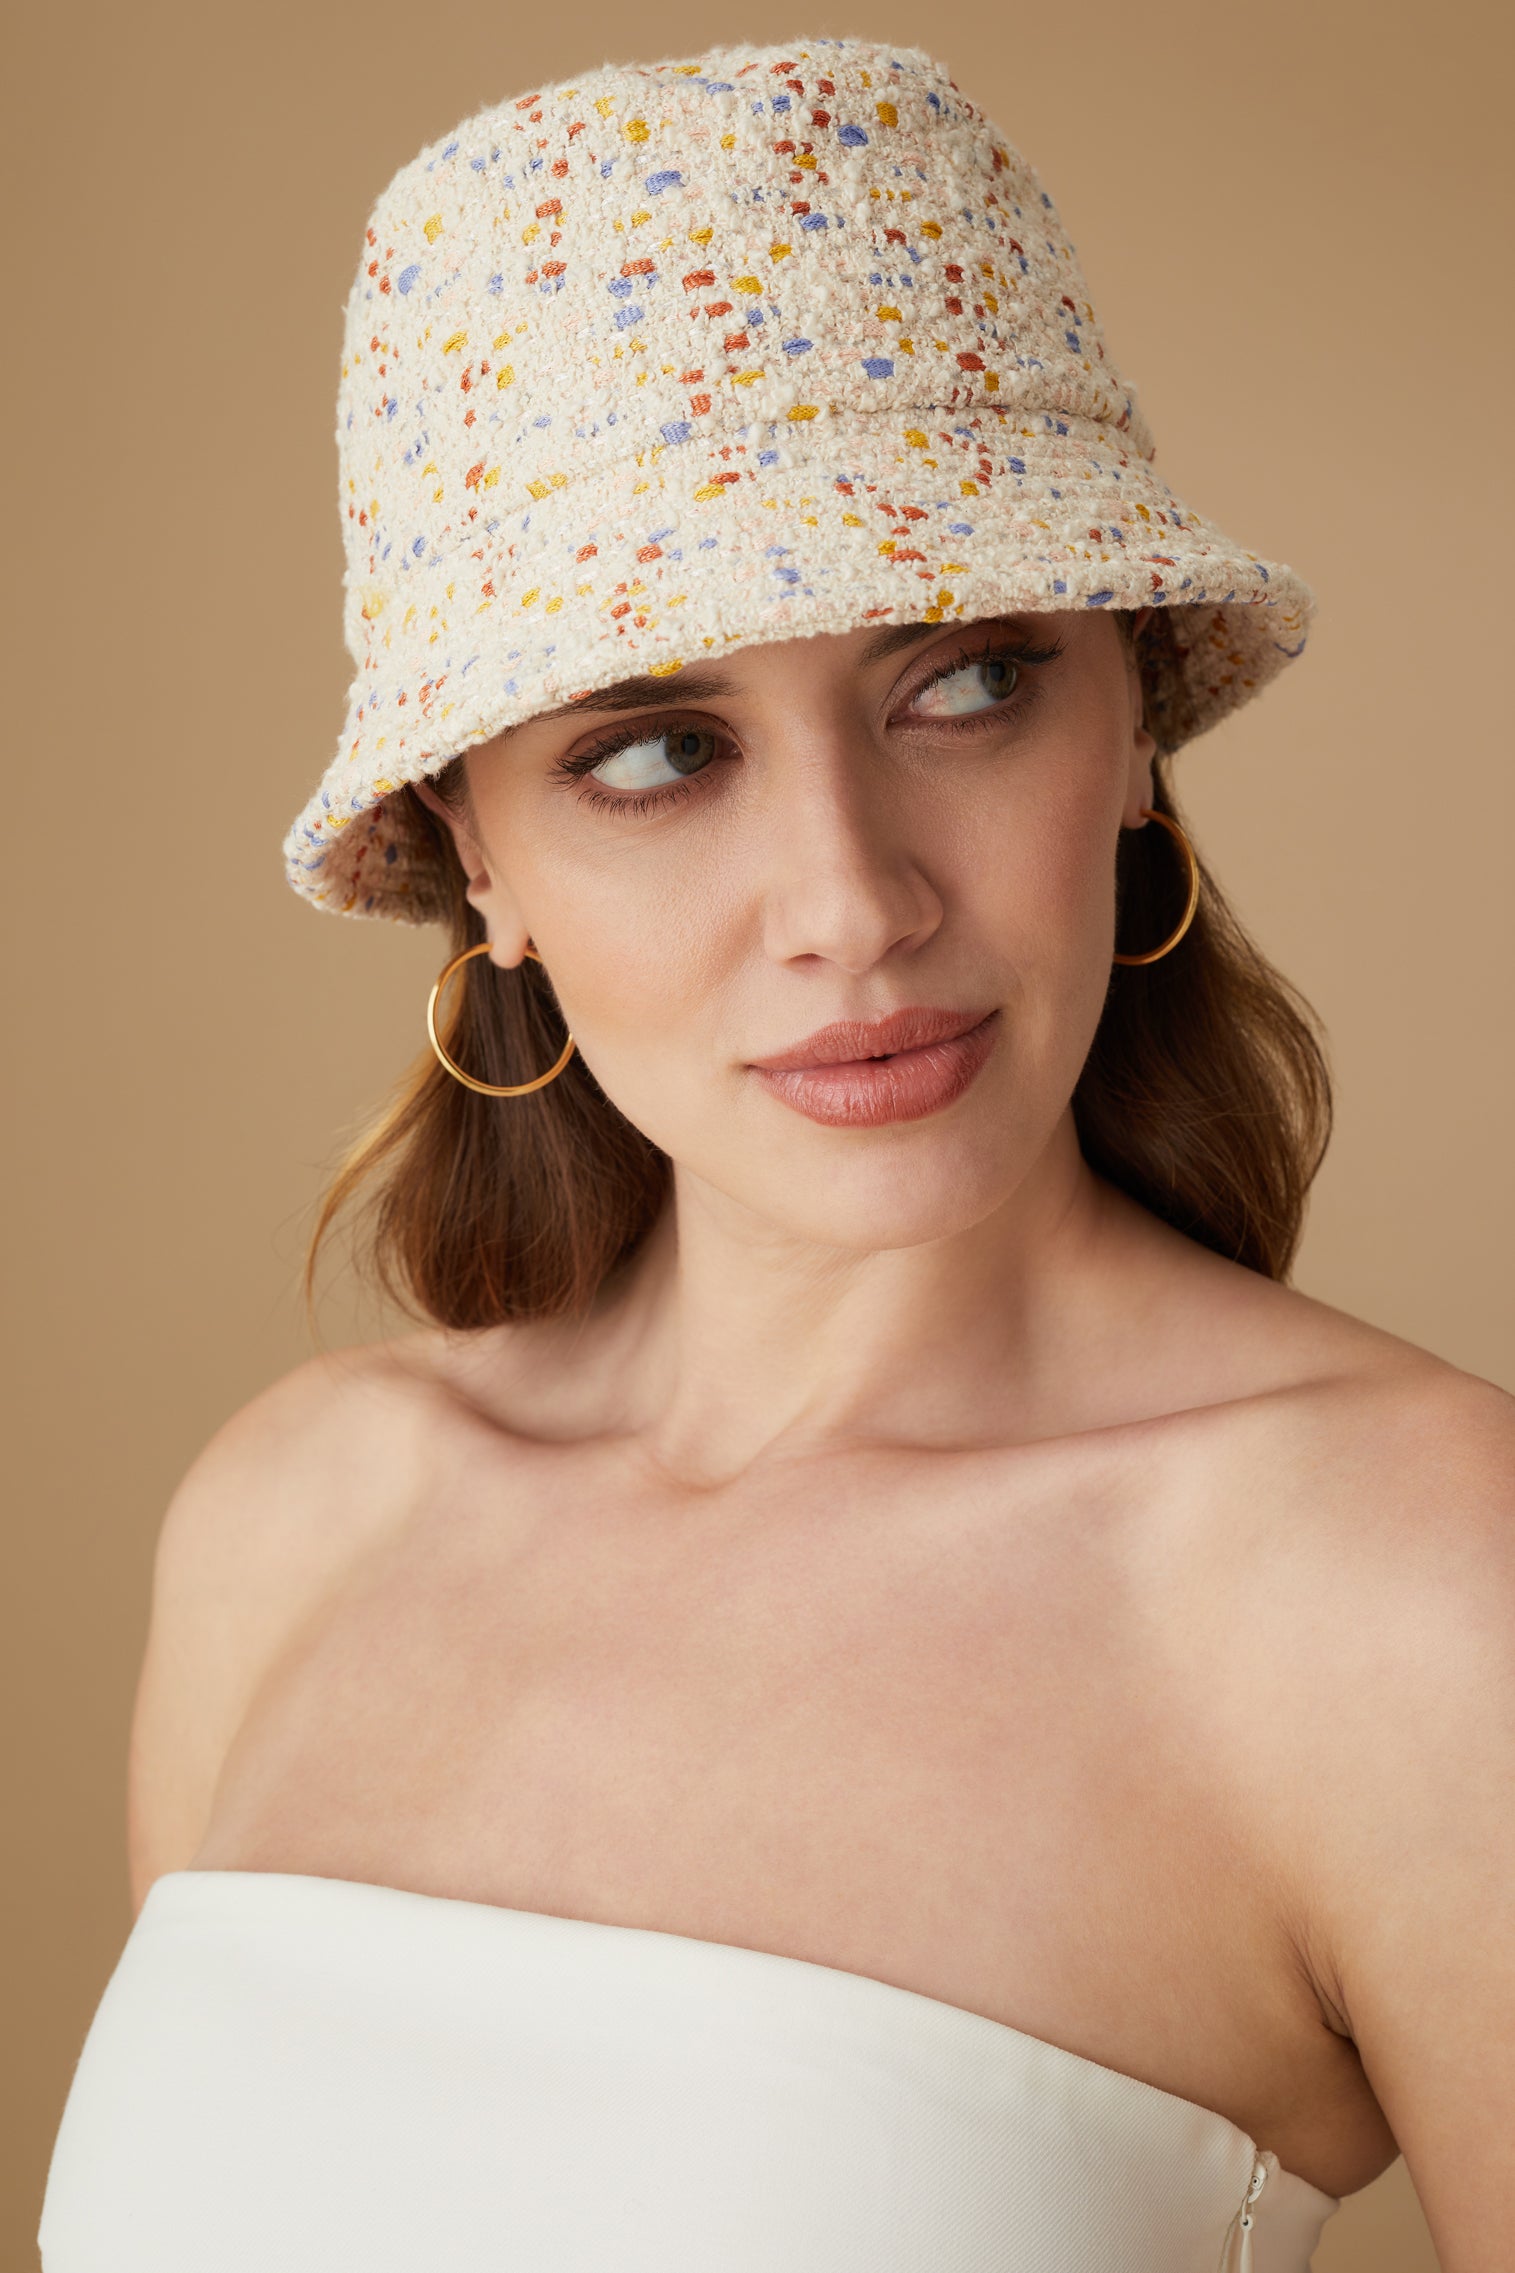 Rye Speckled Bucket Hat - Women's Bucket Hats - Lock & Co. Hatters London UK